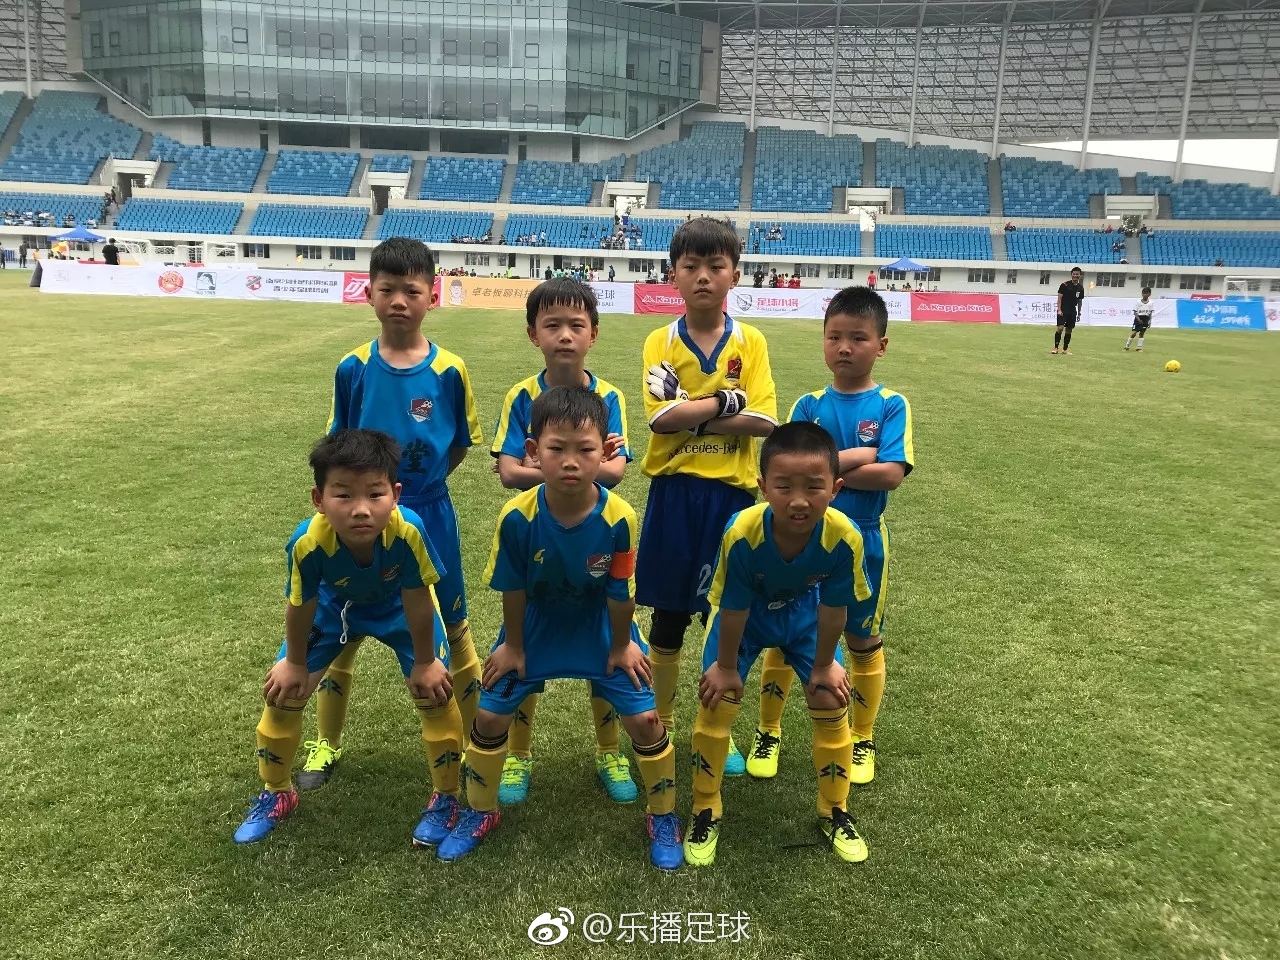 安徽刘博,一个注重培养足球文化的青训俱乐部